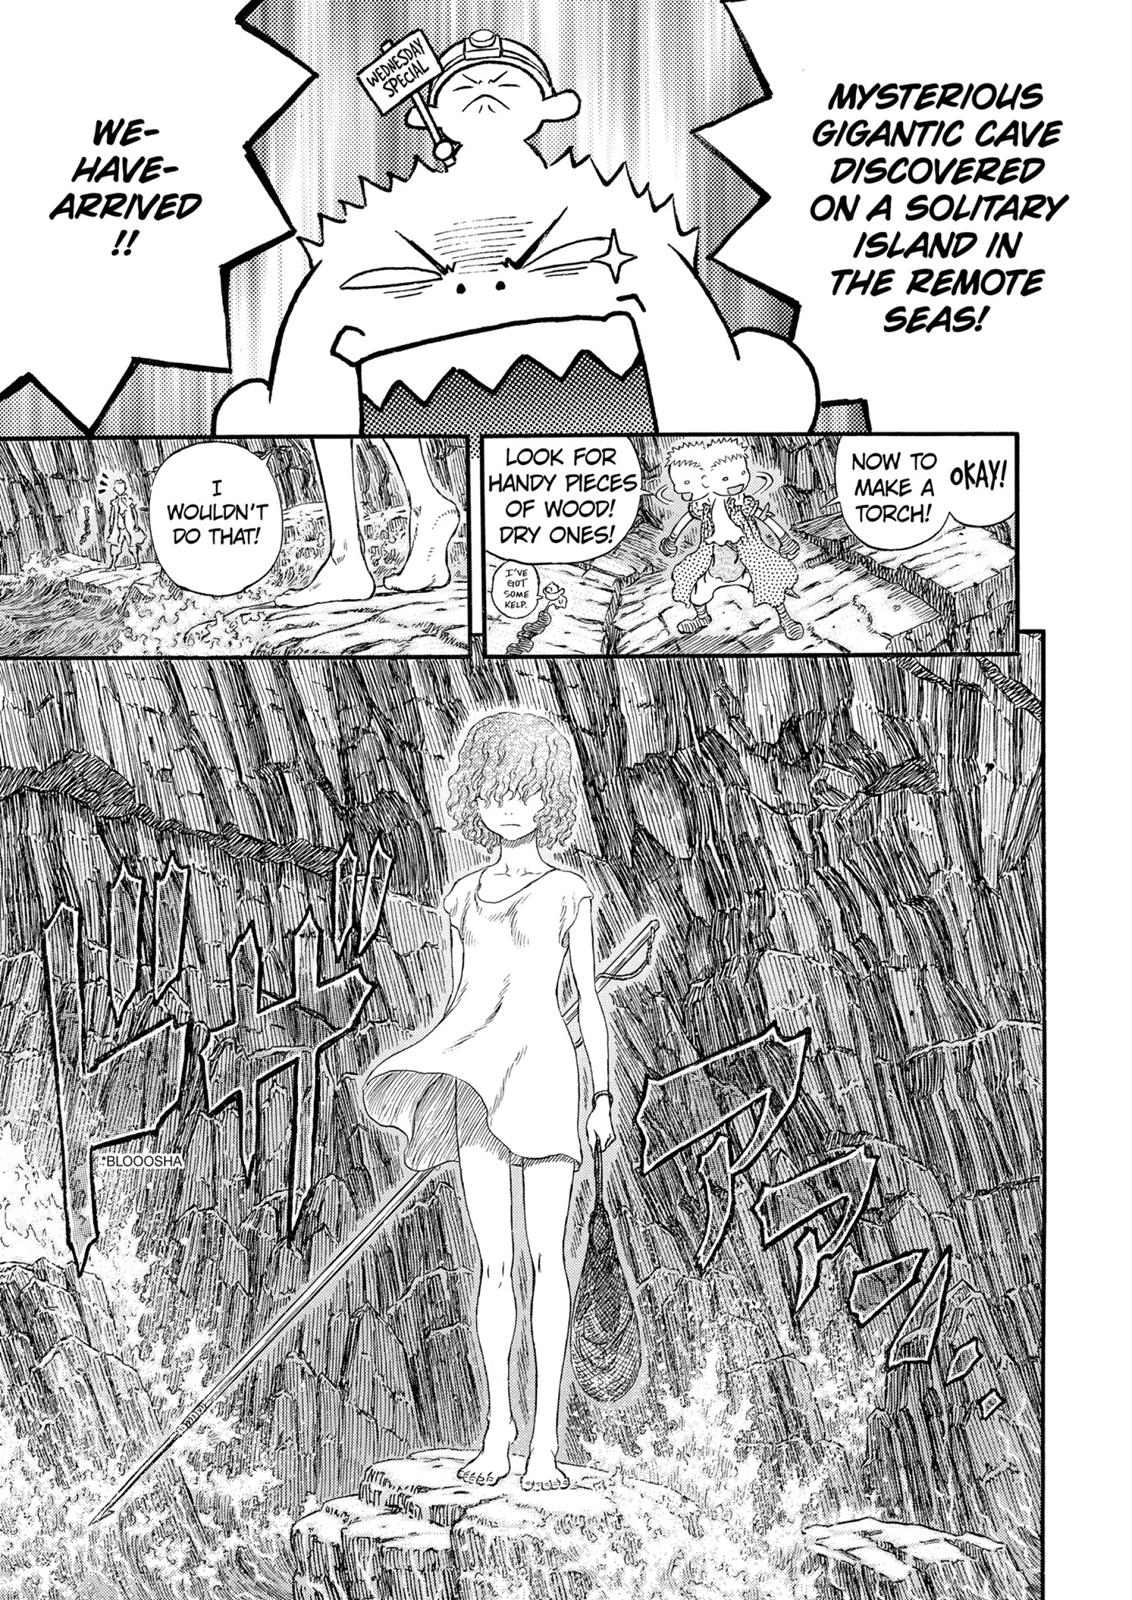 Berserk Manga Chapter 311 image 14